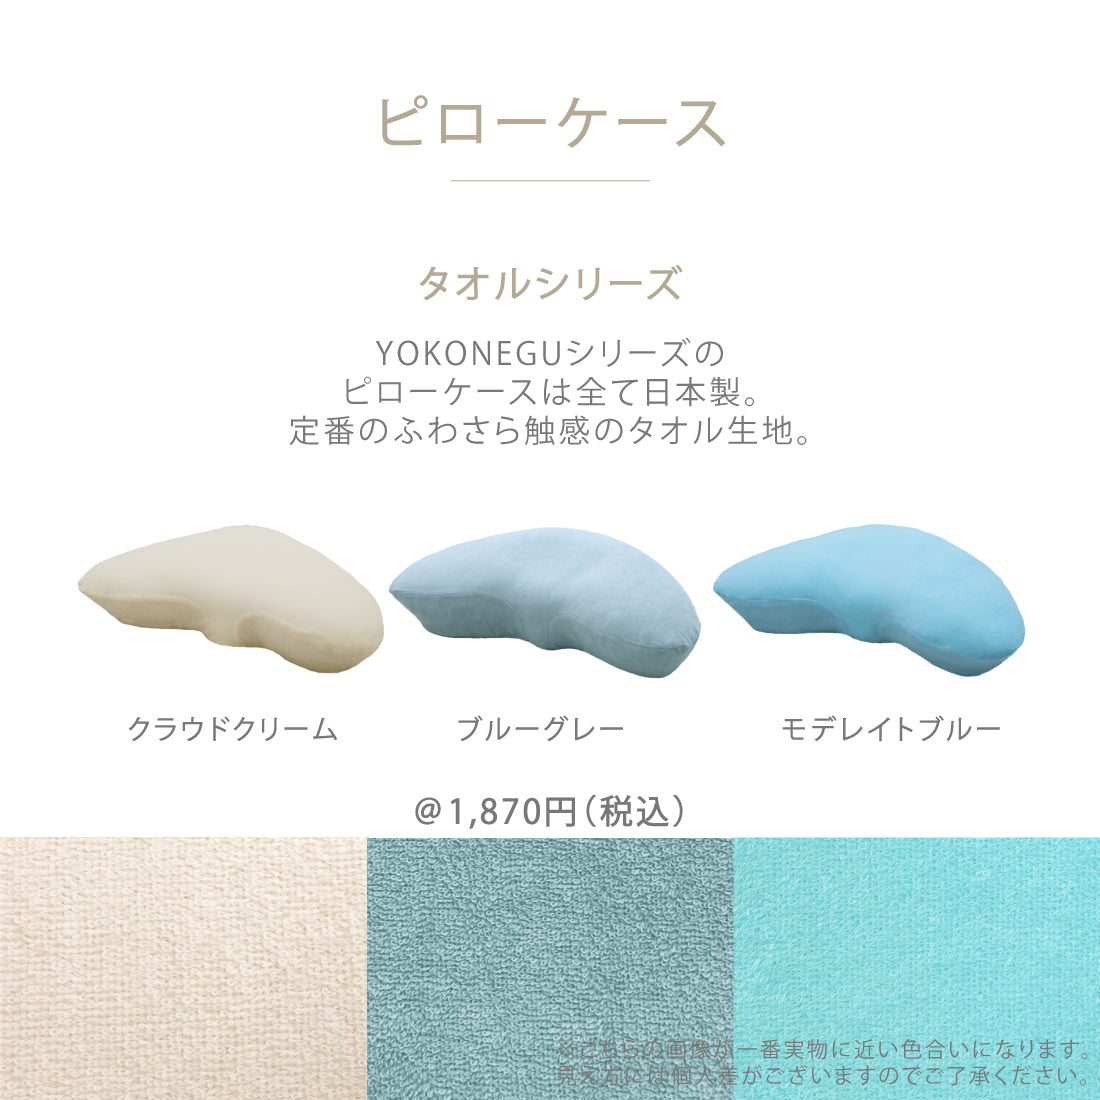 横向き寝専用まくら【YOKONEGU】 創業60年以上の老舗寝具メーカー 